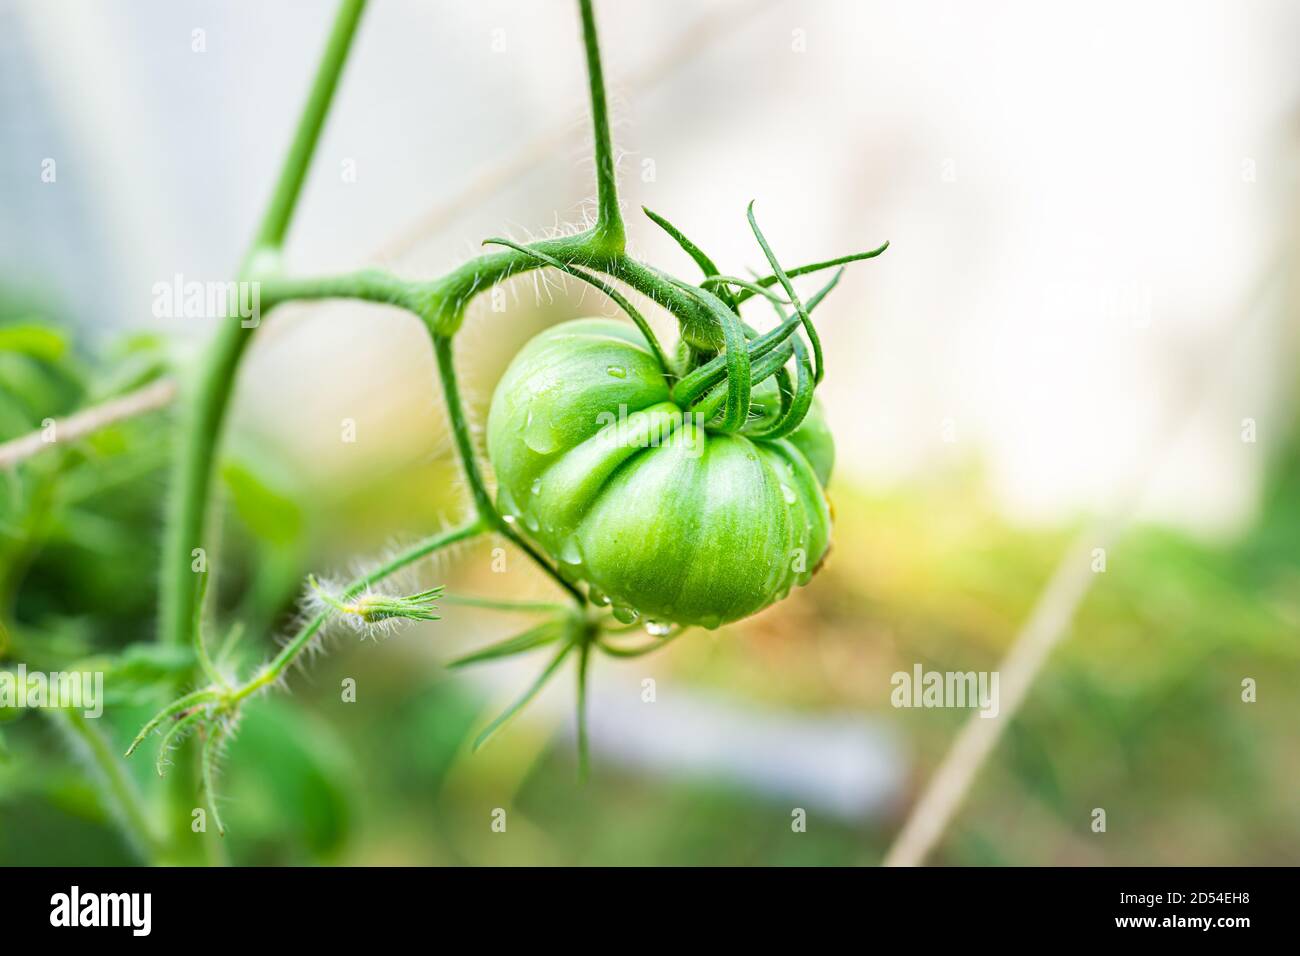 Macro gros plan grande tomate verte non mûre à l'ancienne accrochée plante de vigne dans le jardin avec de l'eau humide gouttes après la pluie avec arrière-plan flou bokeh Banque D'Images